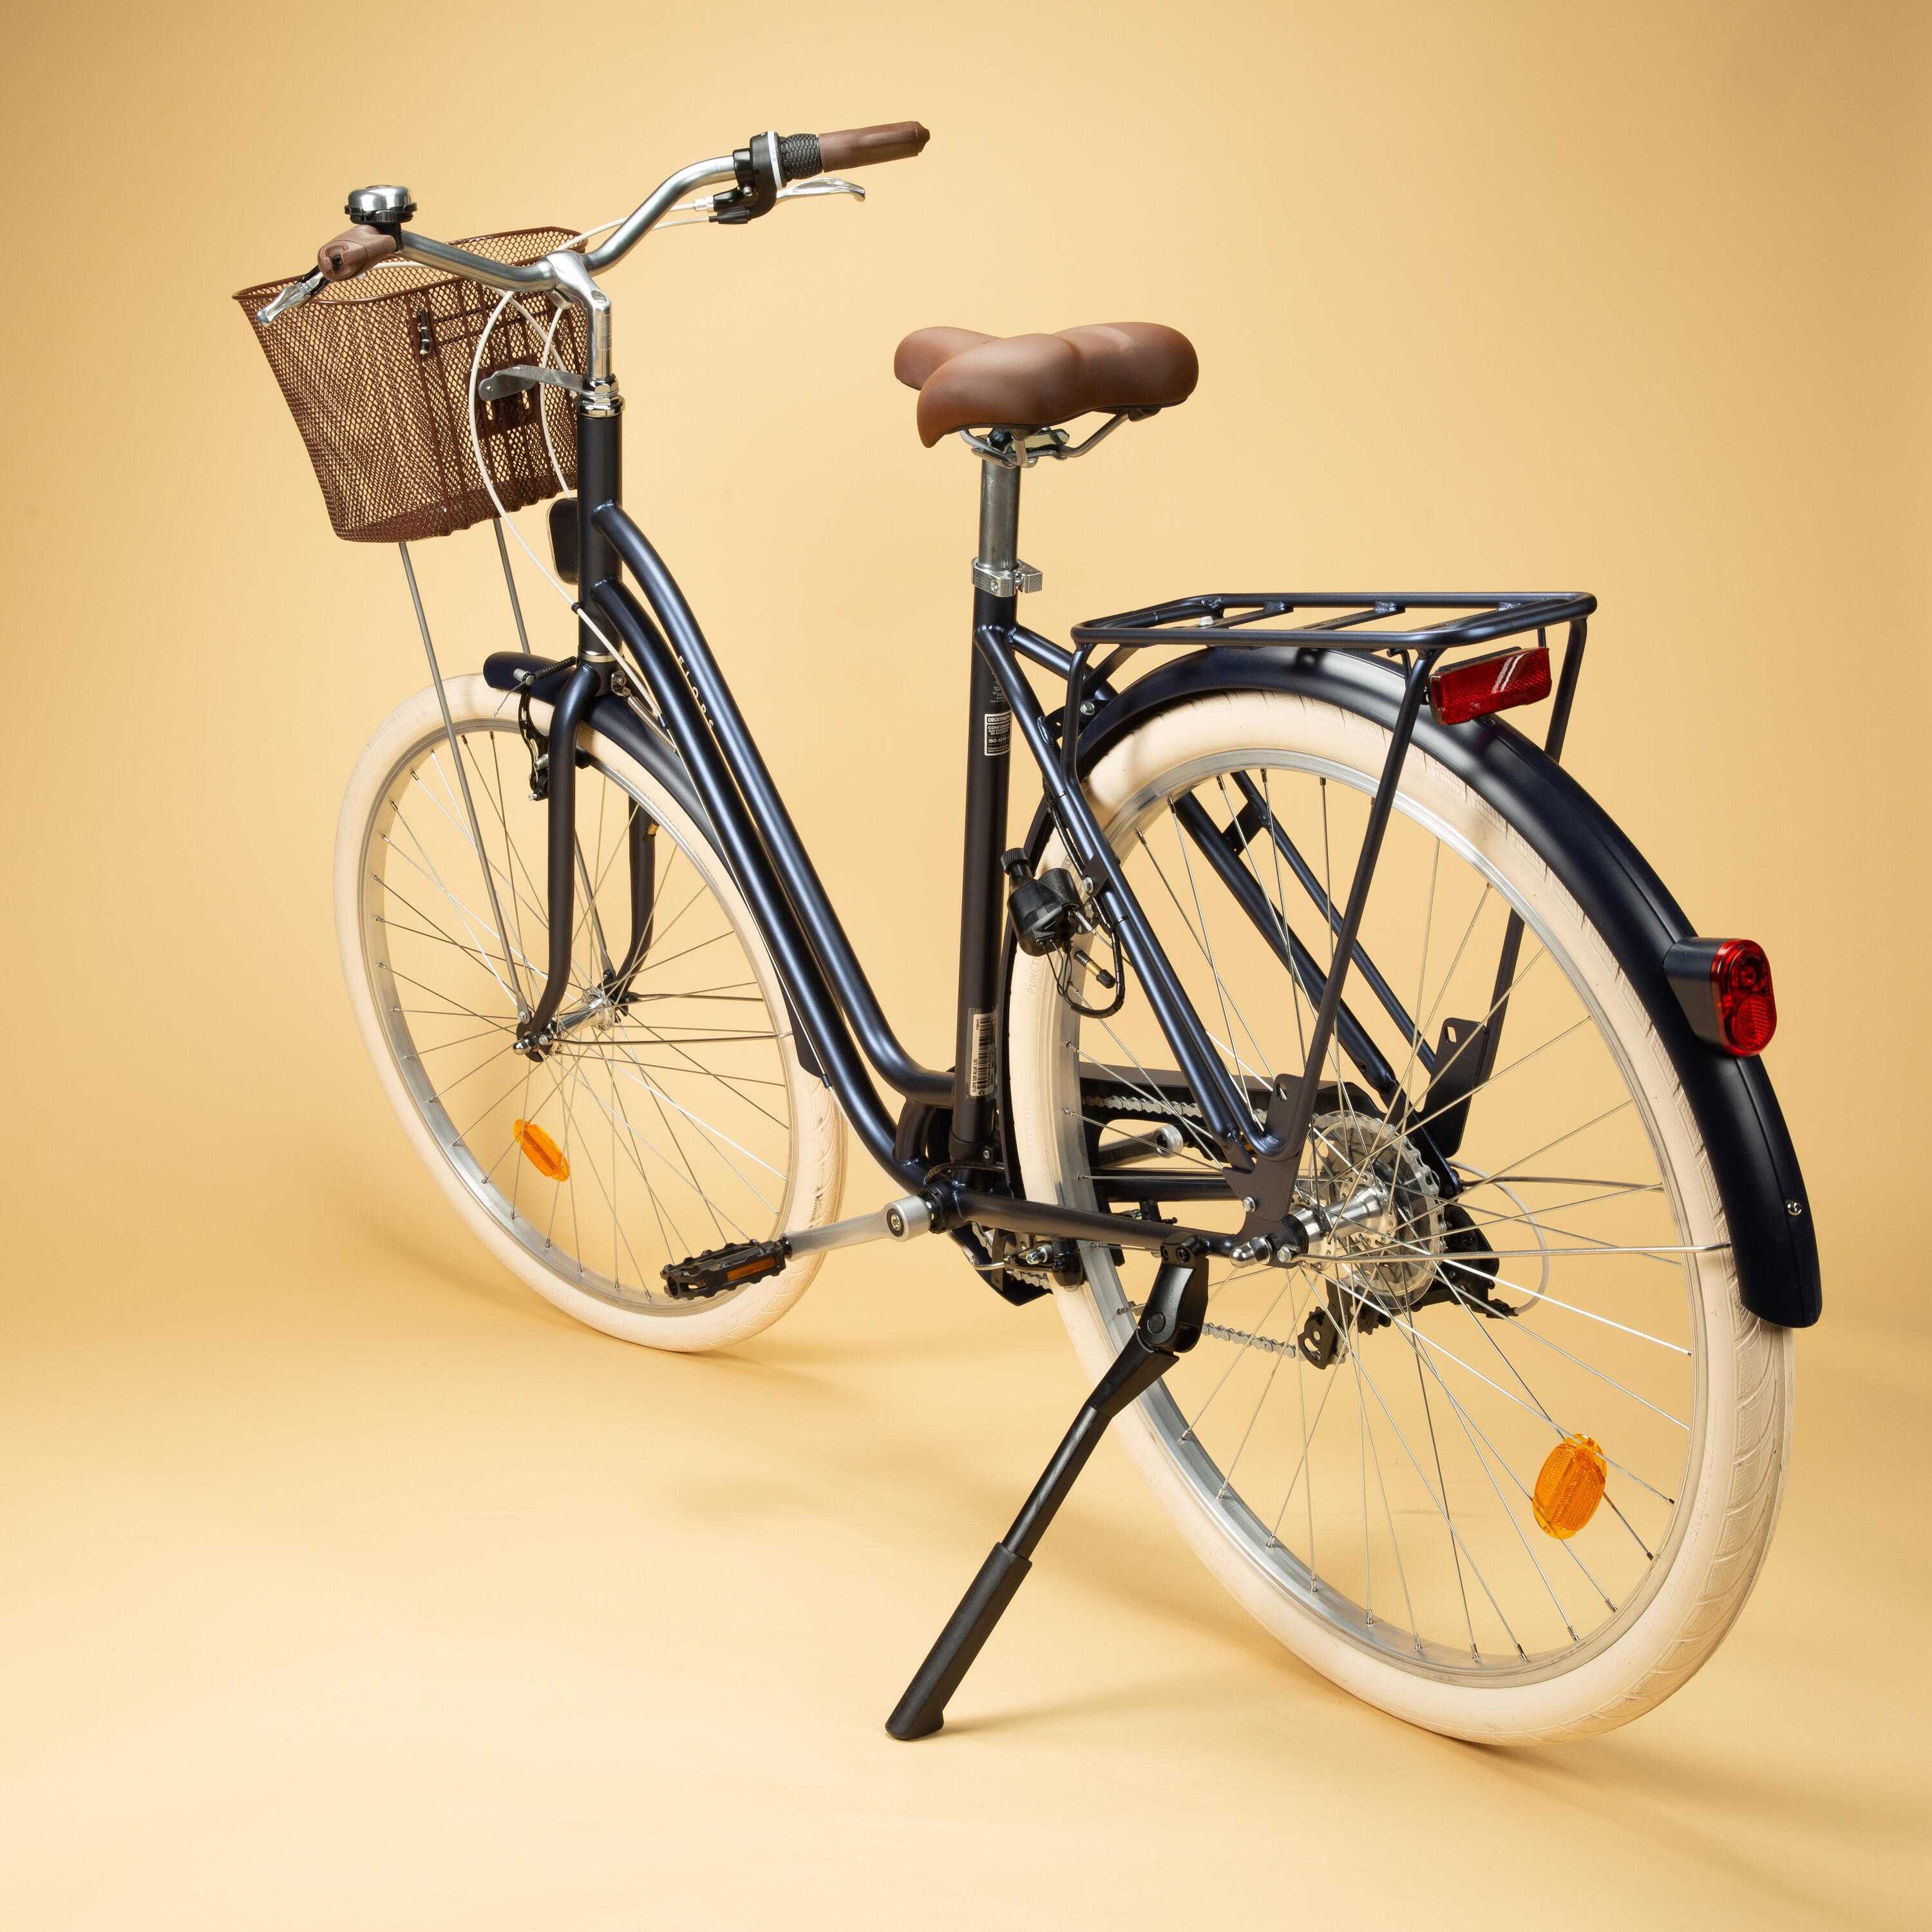 Bicicleta | ELOPS 520 - L/XL - Azul Marinho